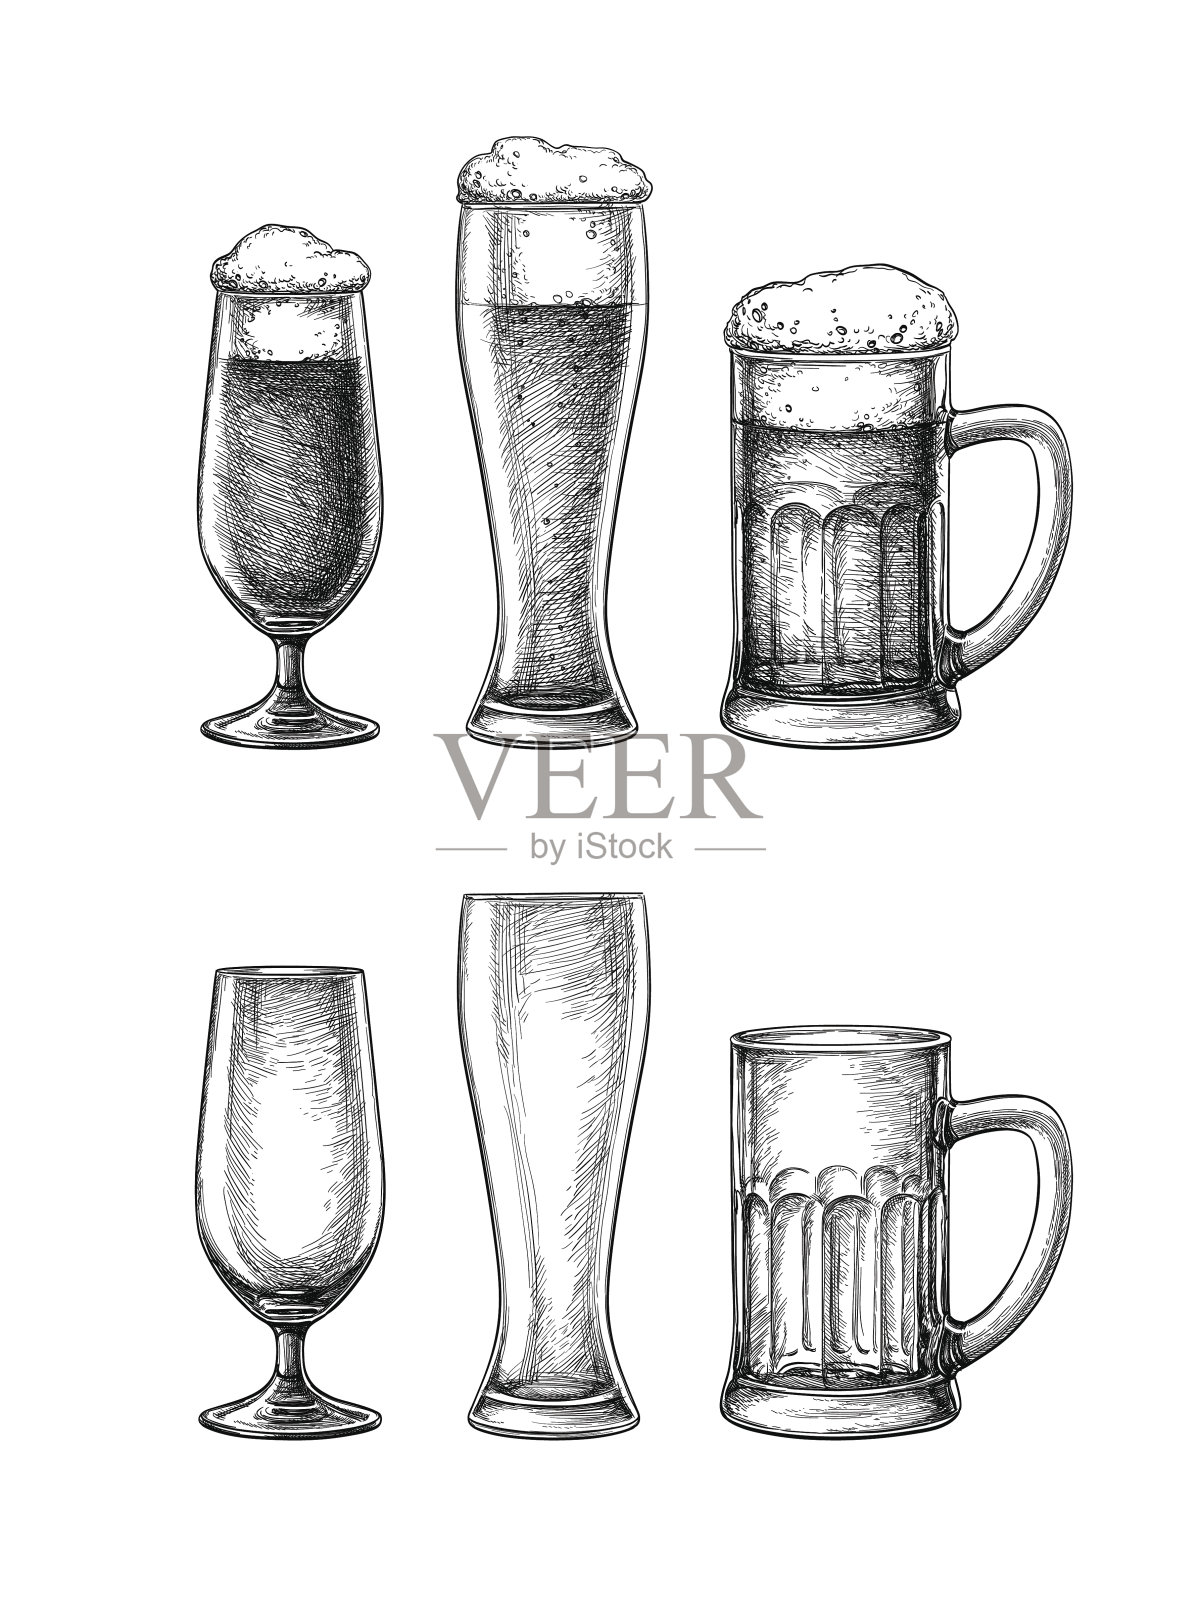 啤酒杯和马克杯插画图片素材